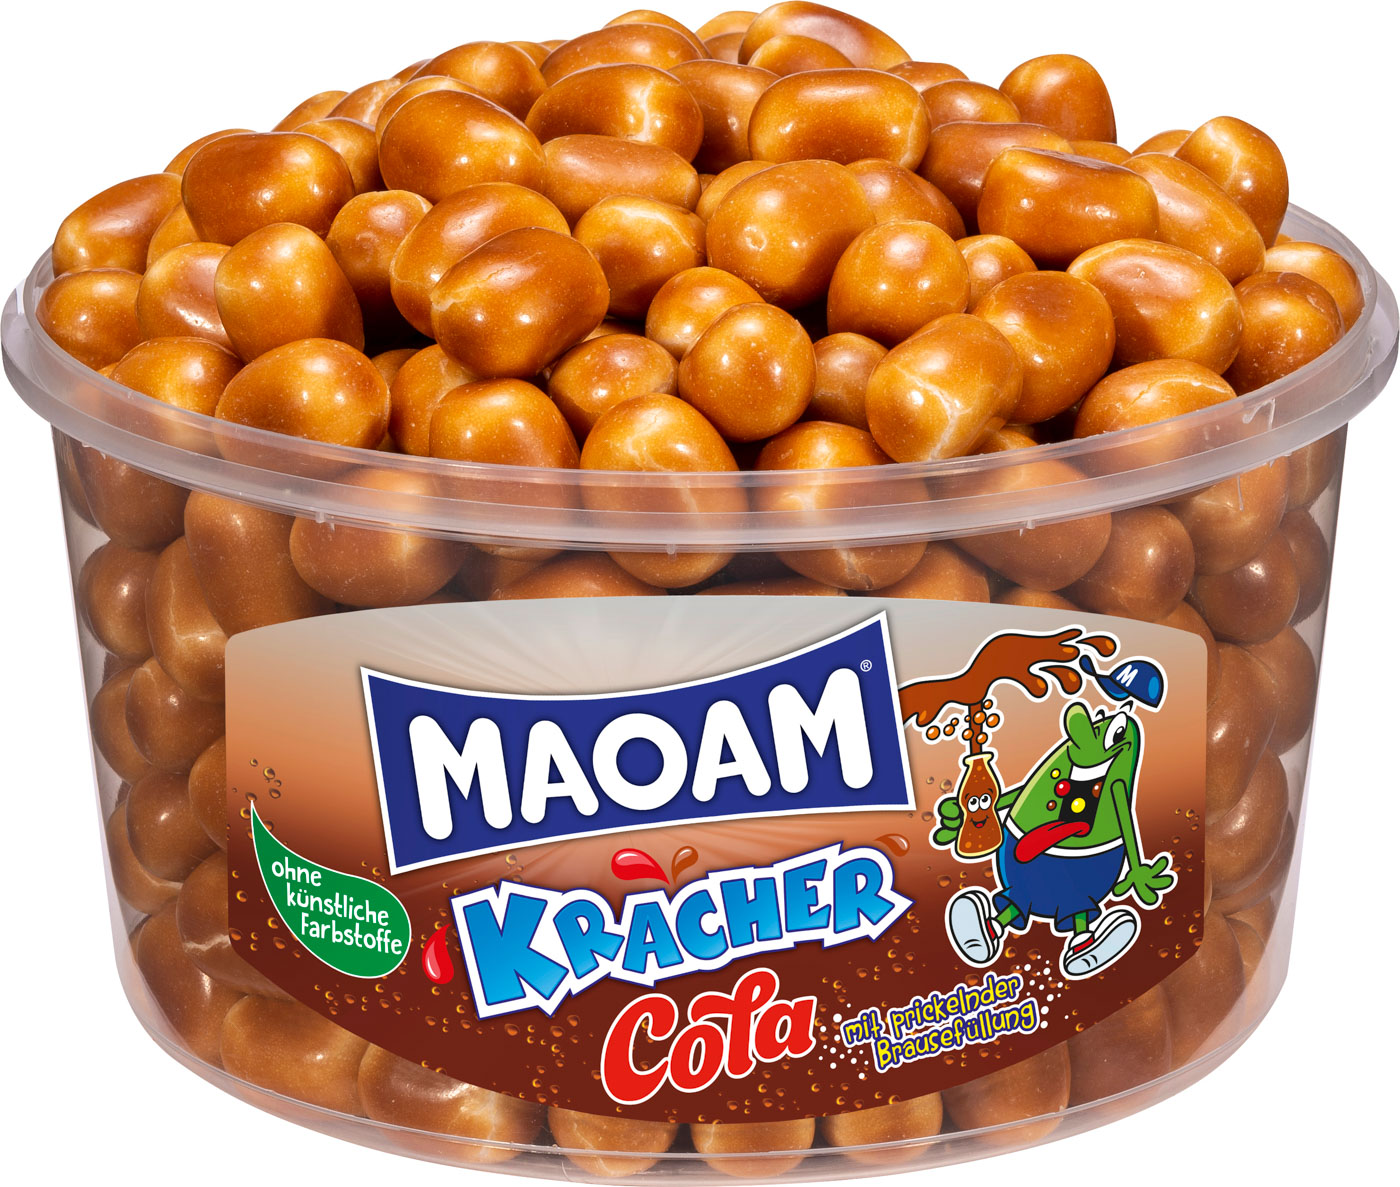 Maoam Cola Kracher 265 Stück